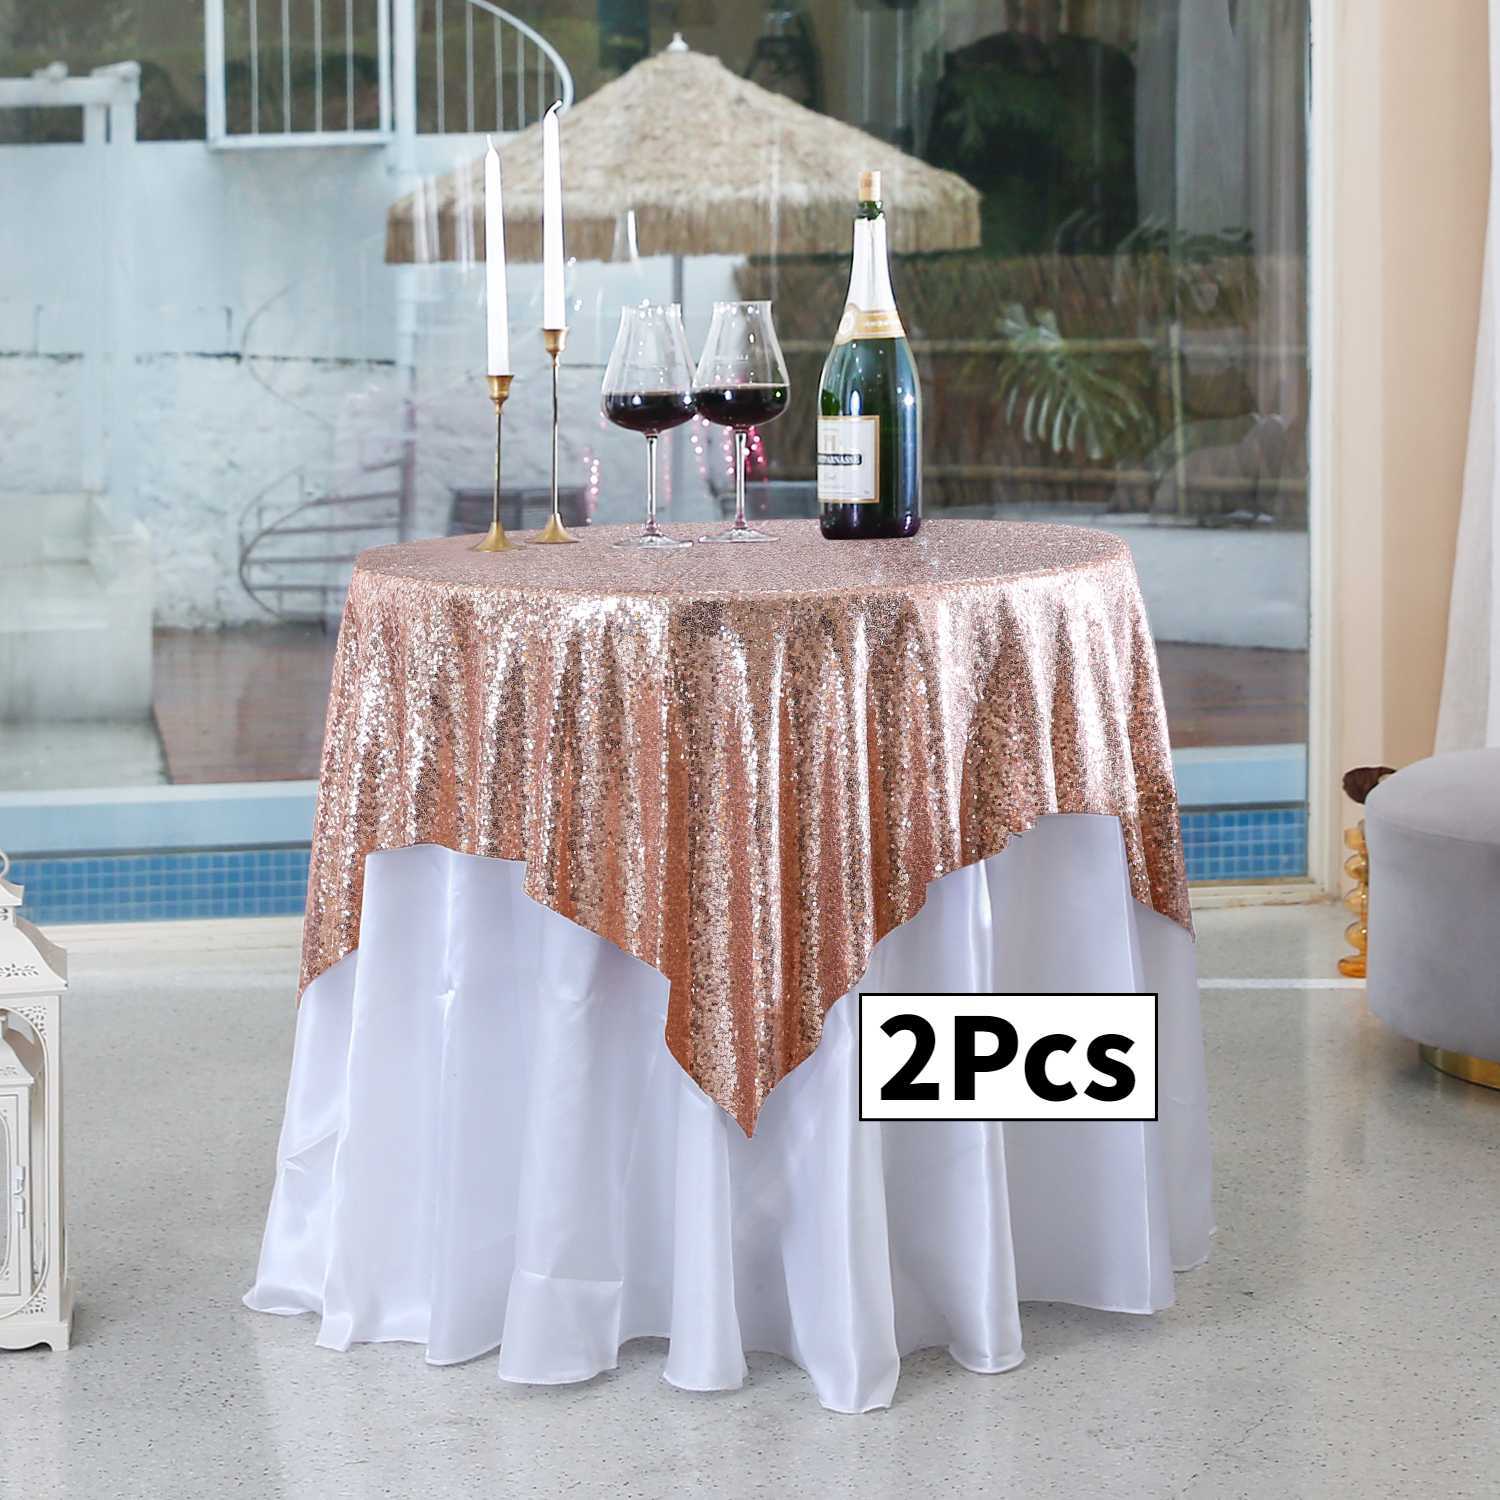  Mantel redondo de plástico para mesas de hasta 72 pulgadas  (azul, 84 pulgadas, paquete de 12) : Hogar y Cocina